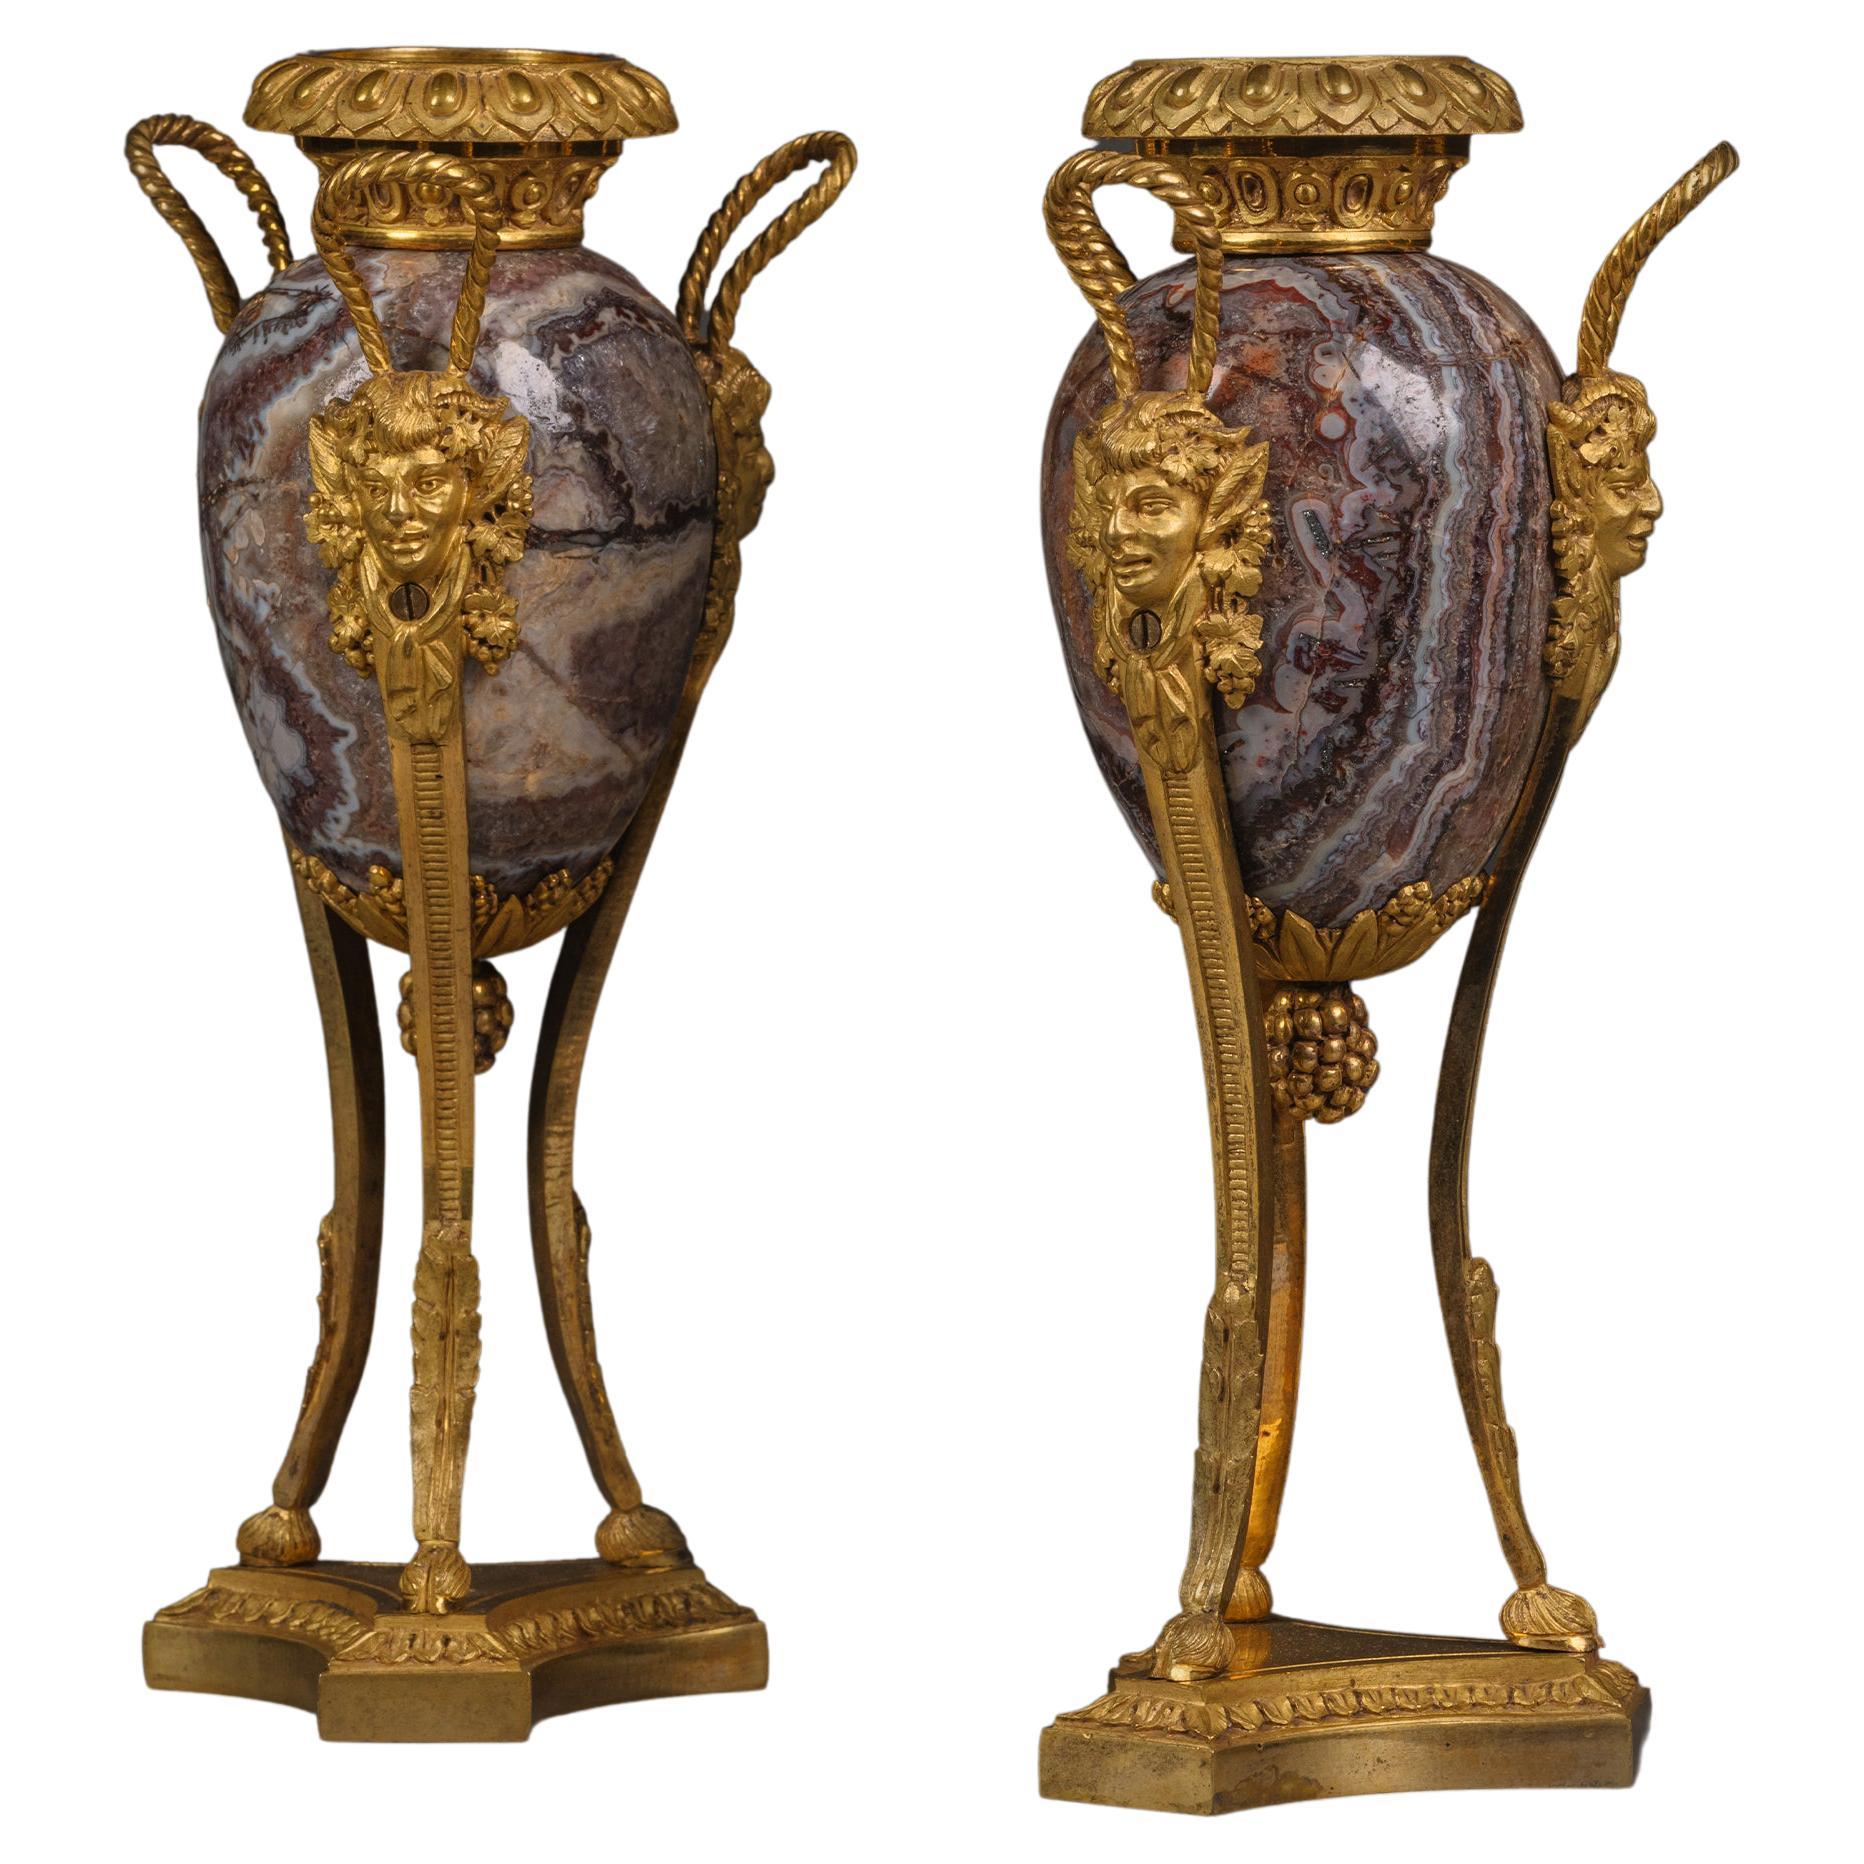 Pair of Petite Louis XVI Style Gilt-Bronze Mounted Fluorspar Cassolettes